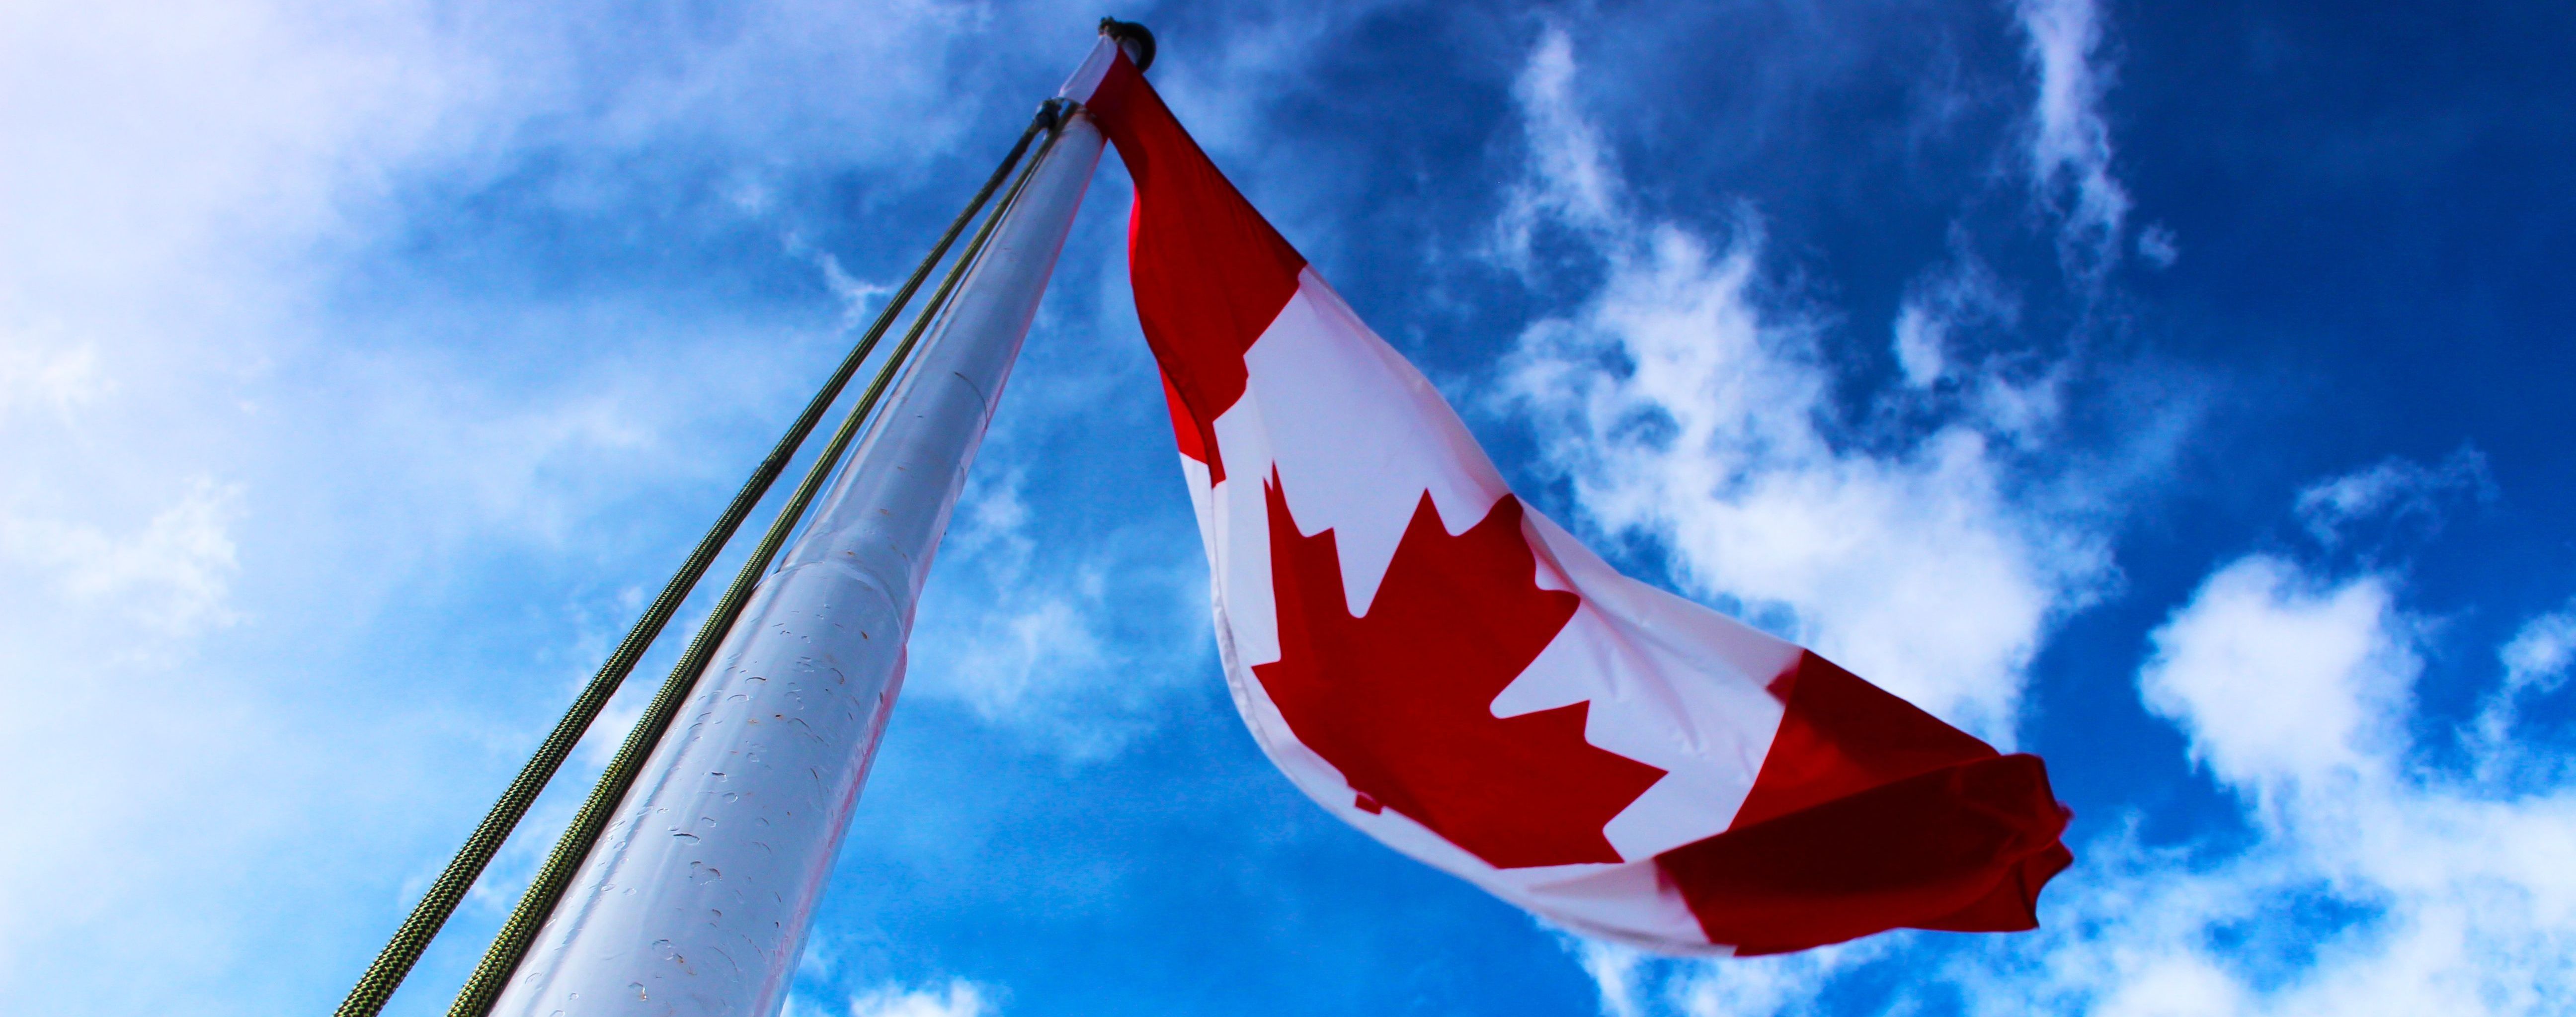 Трюдо приглашает в Канаду квалифицированных мигрантов, чтобы построить "сильную страну"